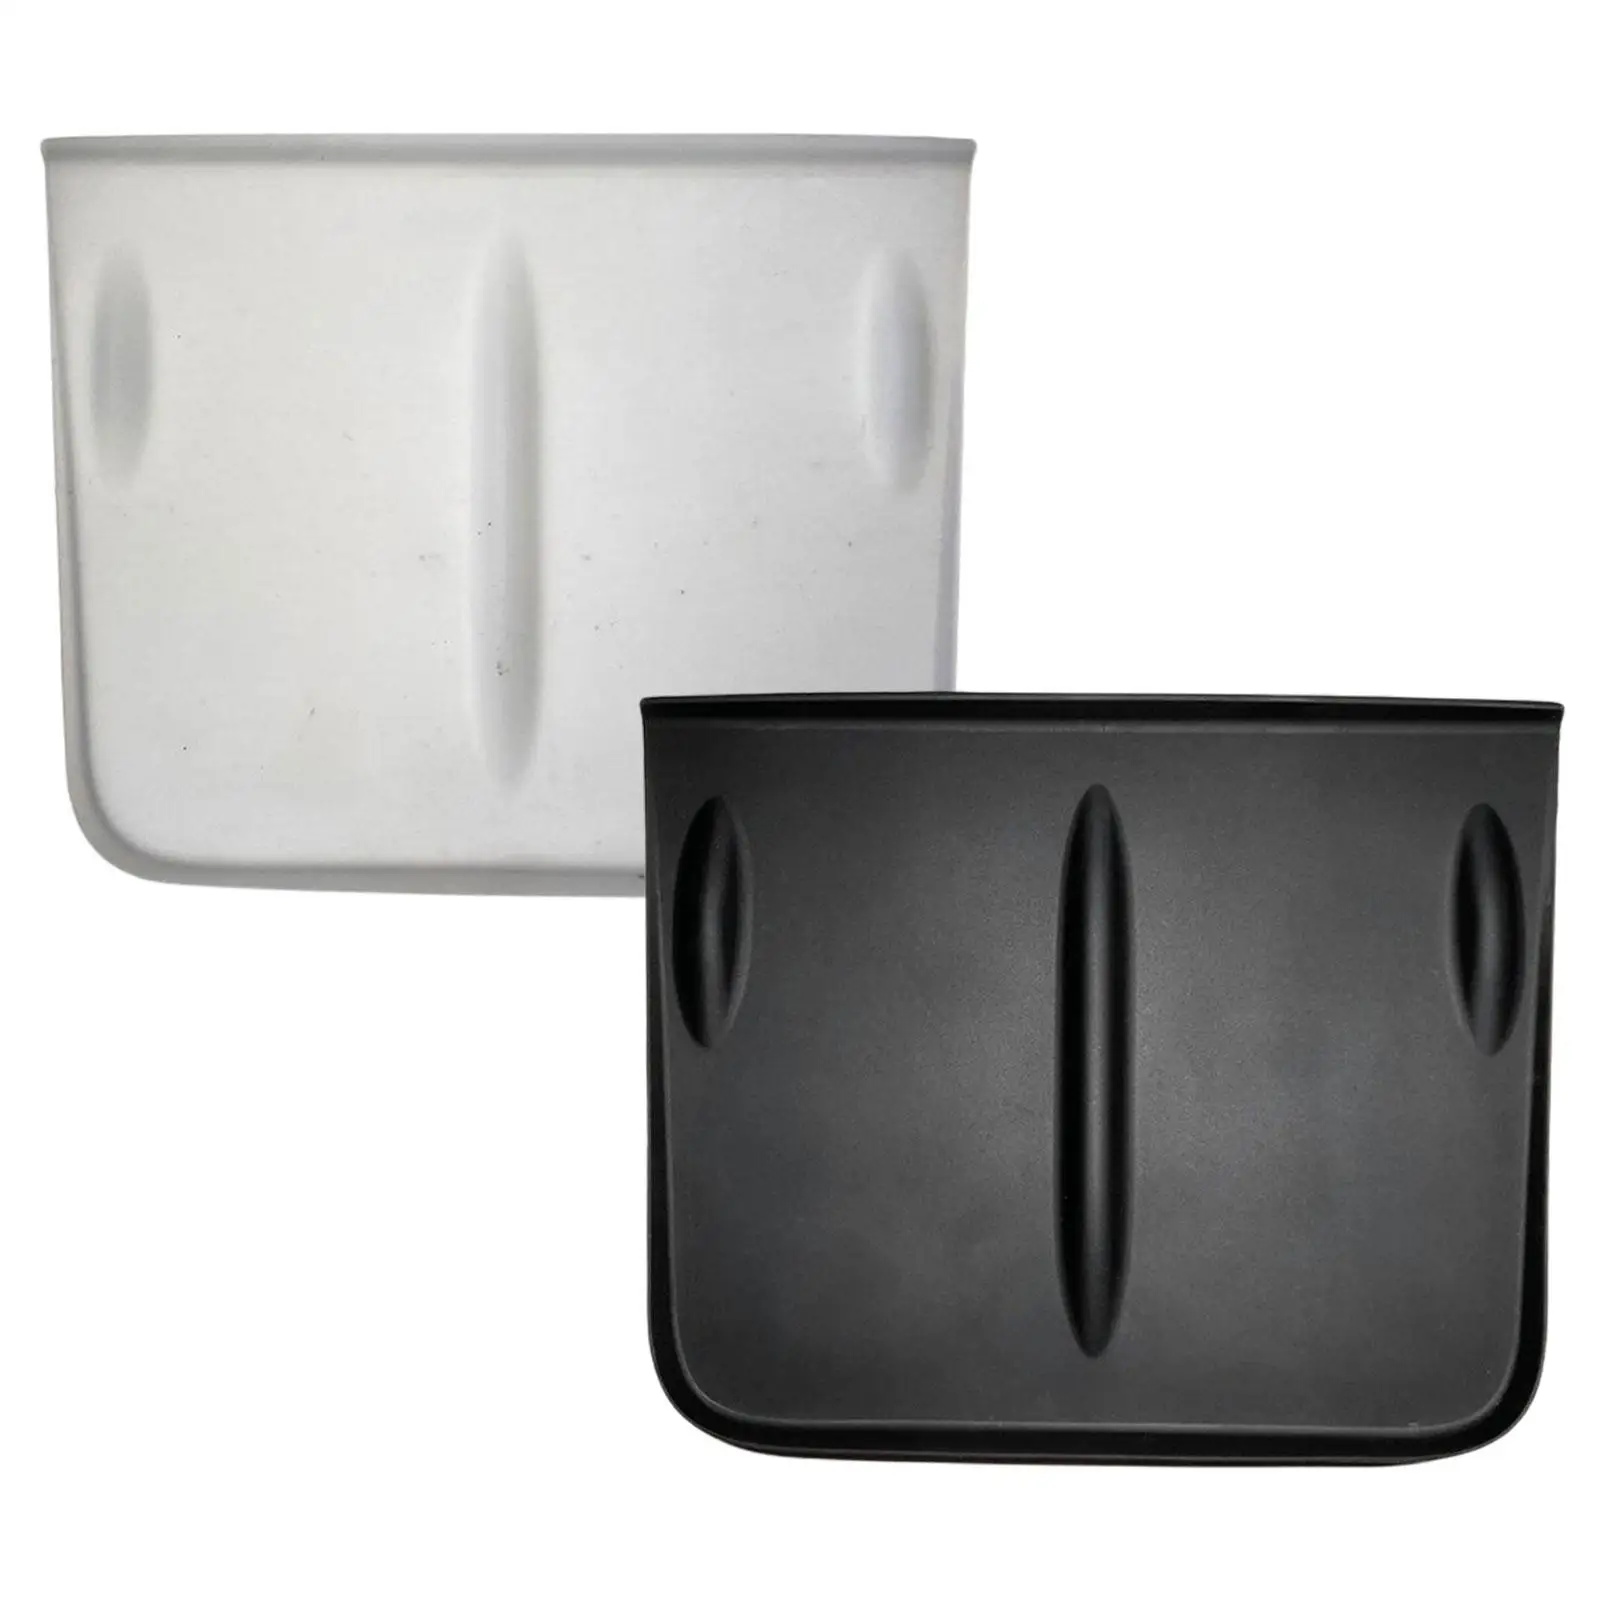 Non-Slip Silicone Pad Auto Interior Accessories for Tesla Model 3/Y